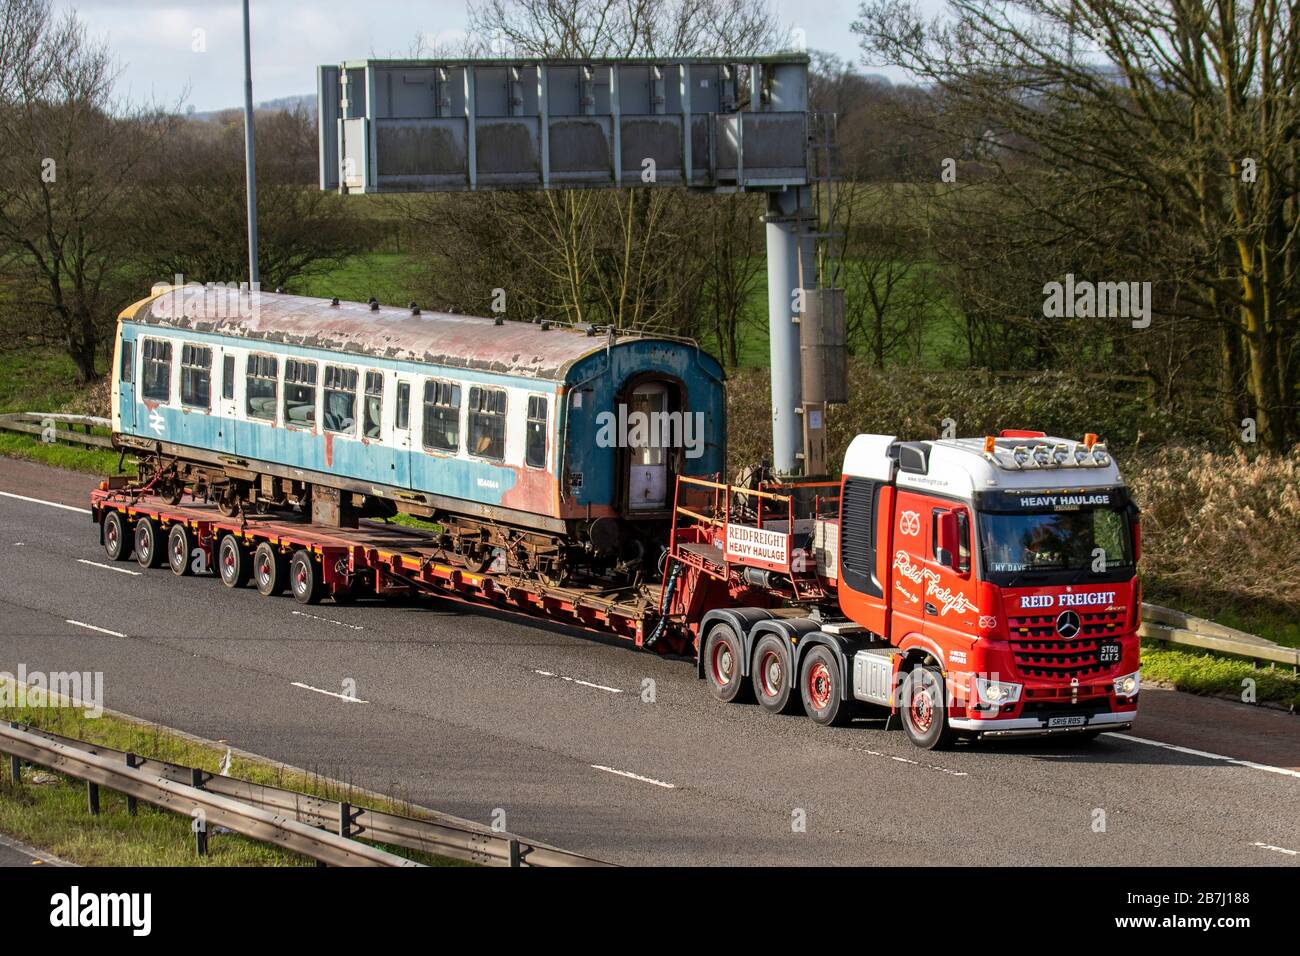 Heavy weight locomotive immagini e fotografie stock ad alta risoluzione -  Alamy